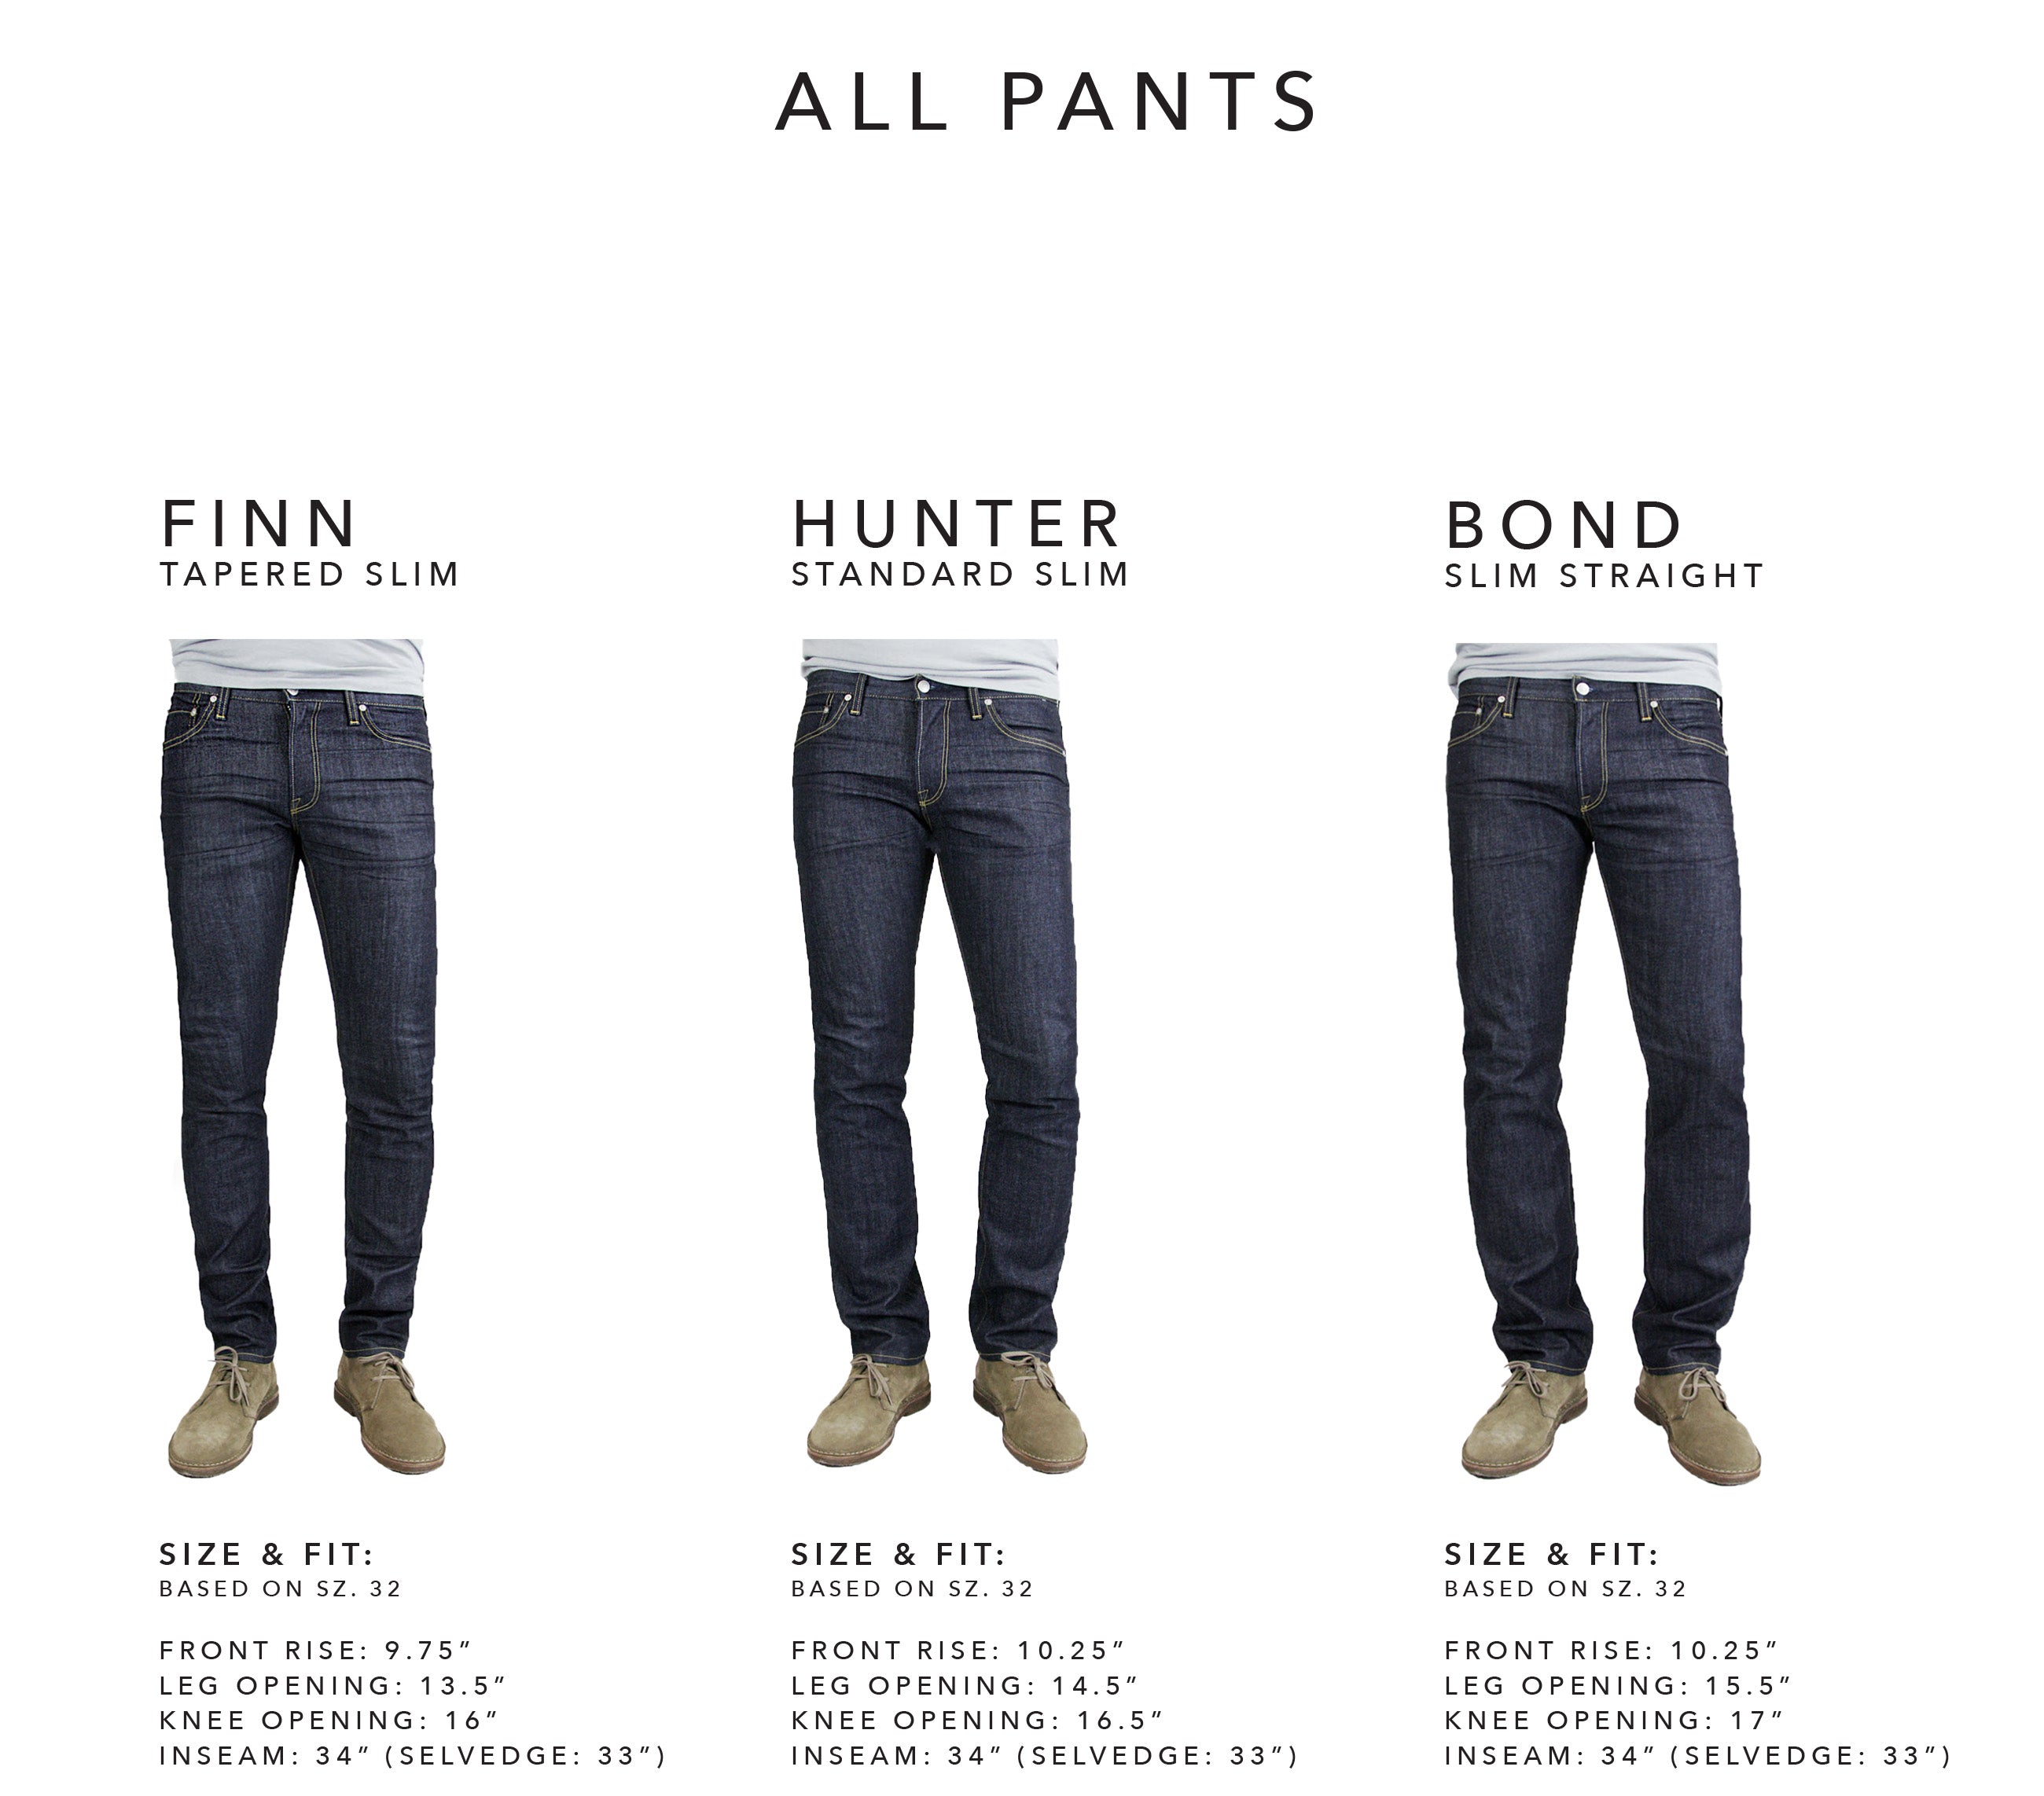 All Pants | Men's Premium Denim made in LA | S.M.N Studio